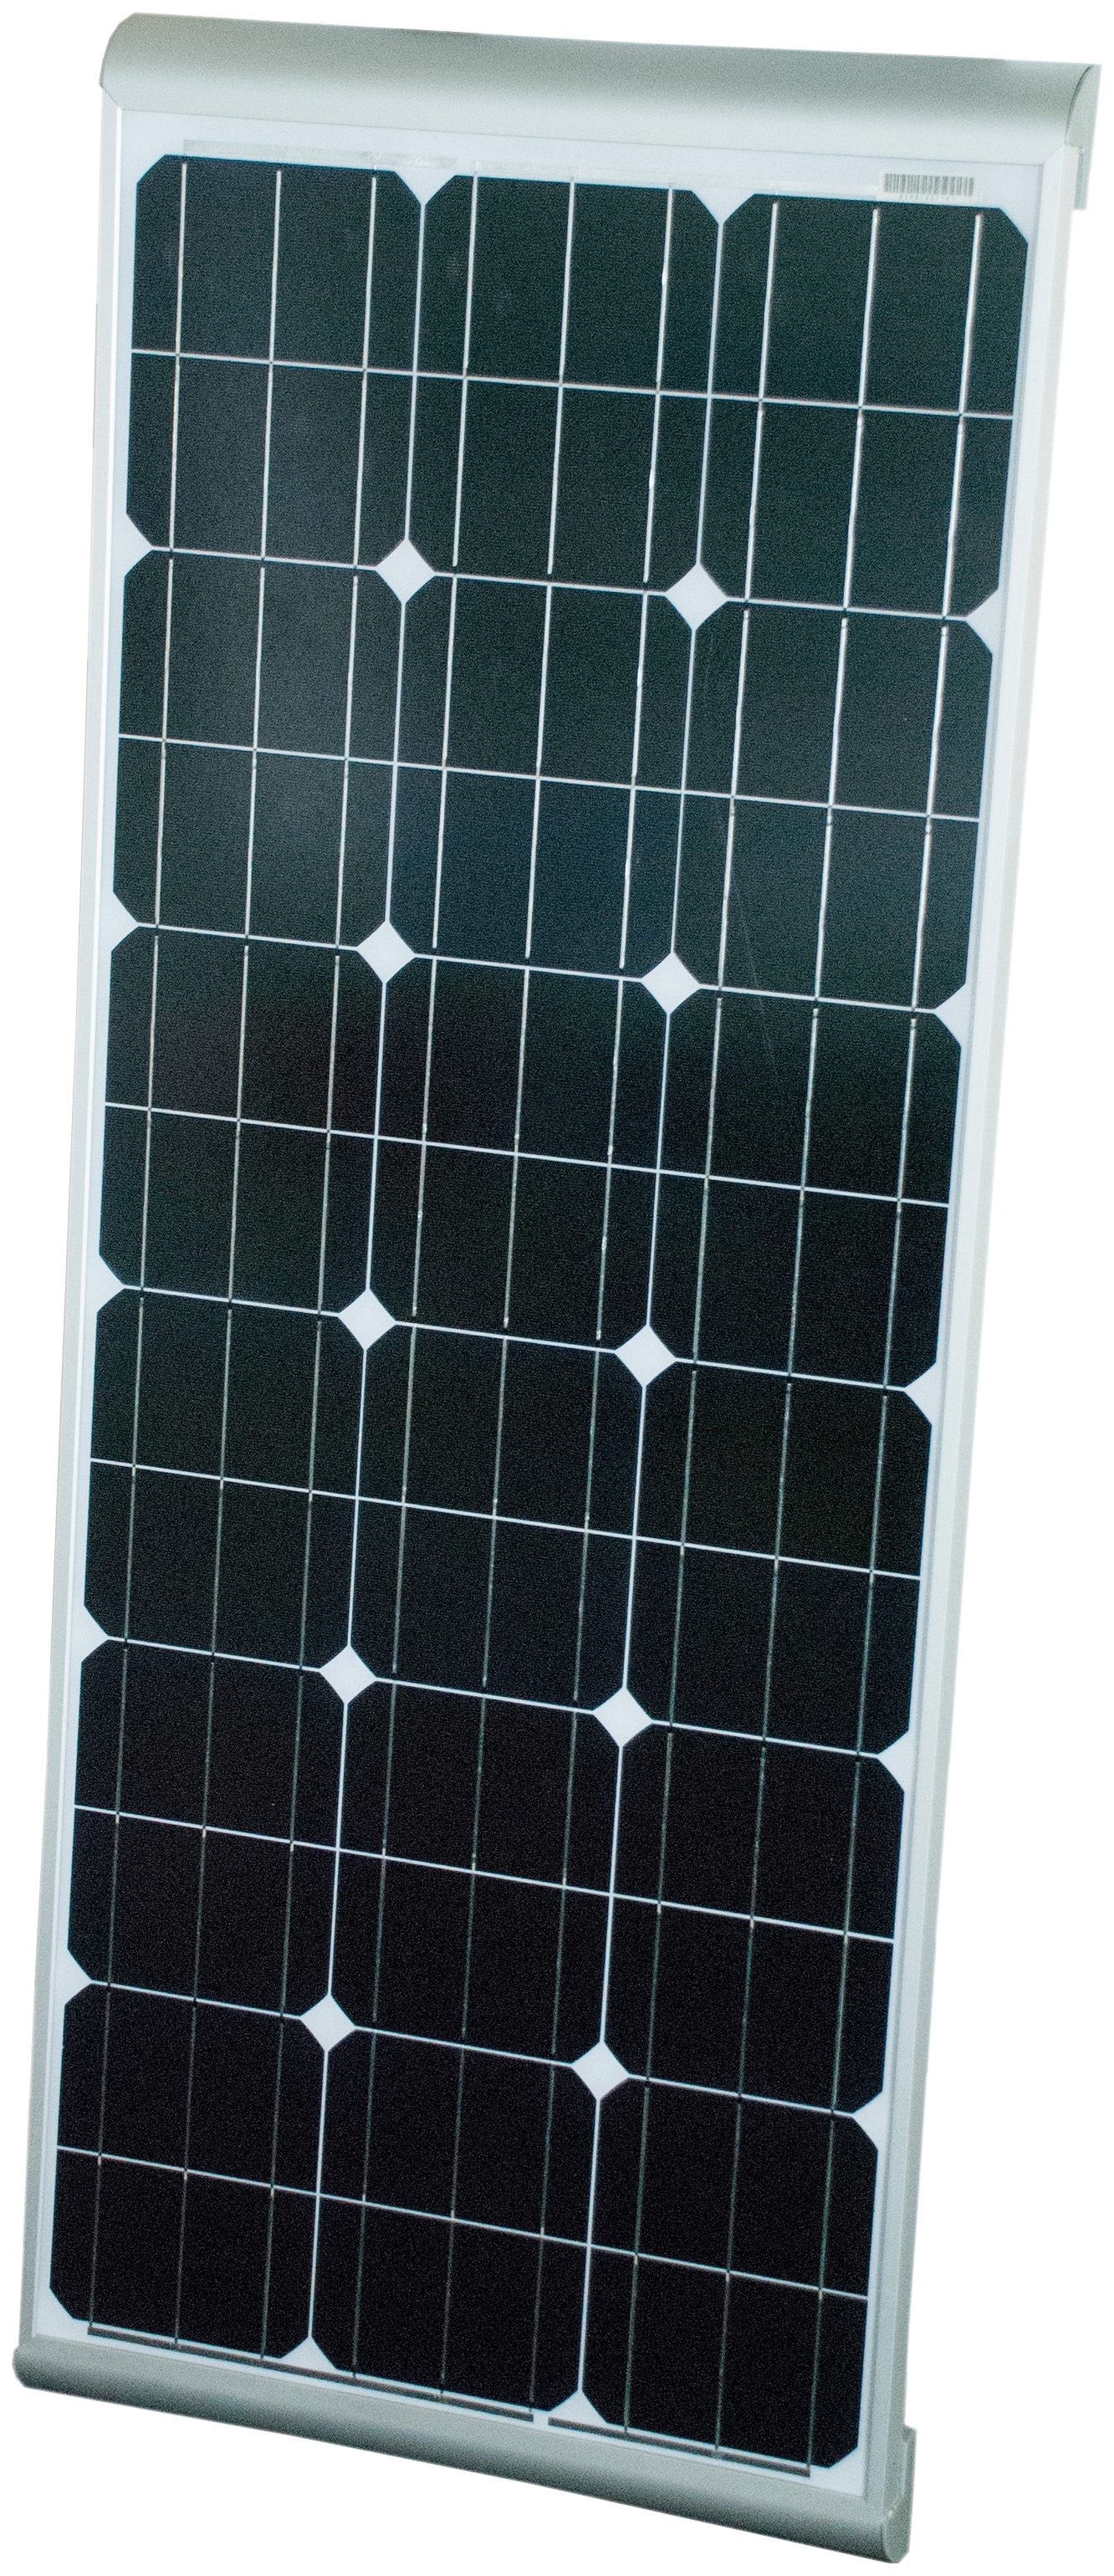 Phaesun Solarmodul »Sun Plus 120 Aero«, 12 VDC, IP65 Schutz